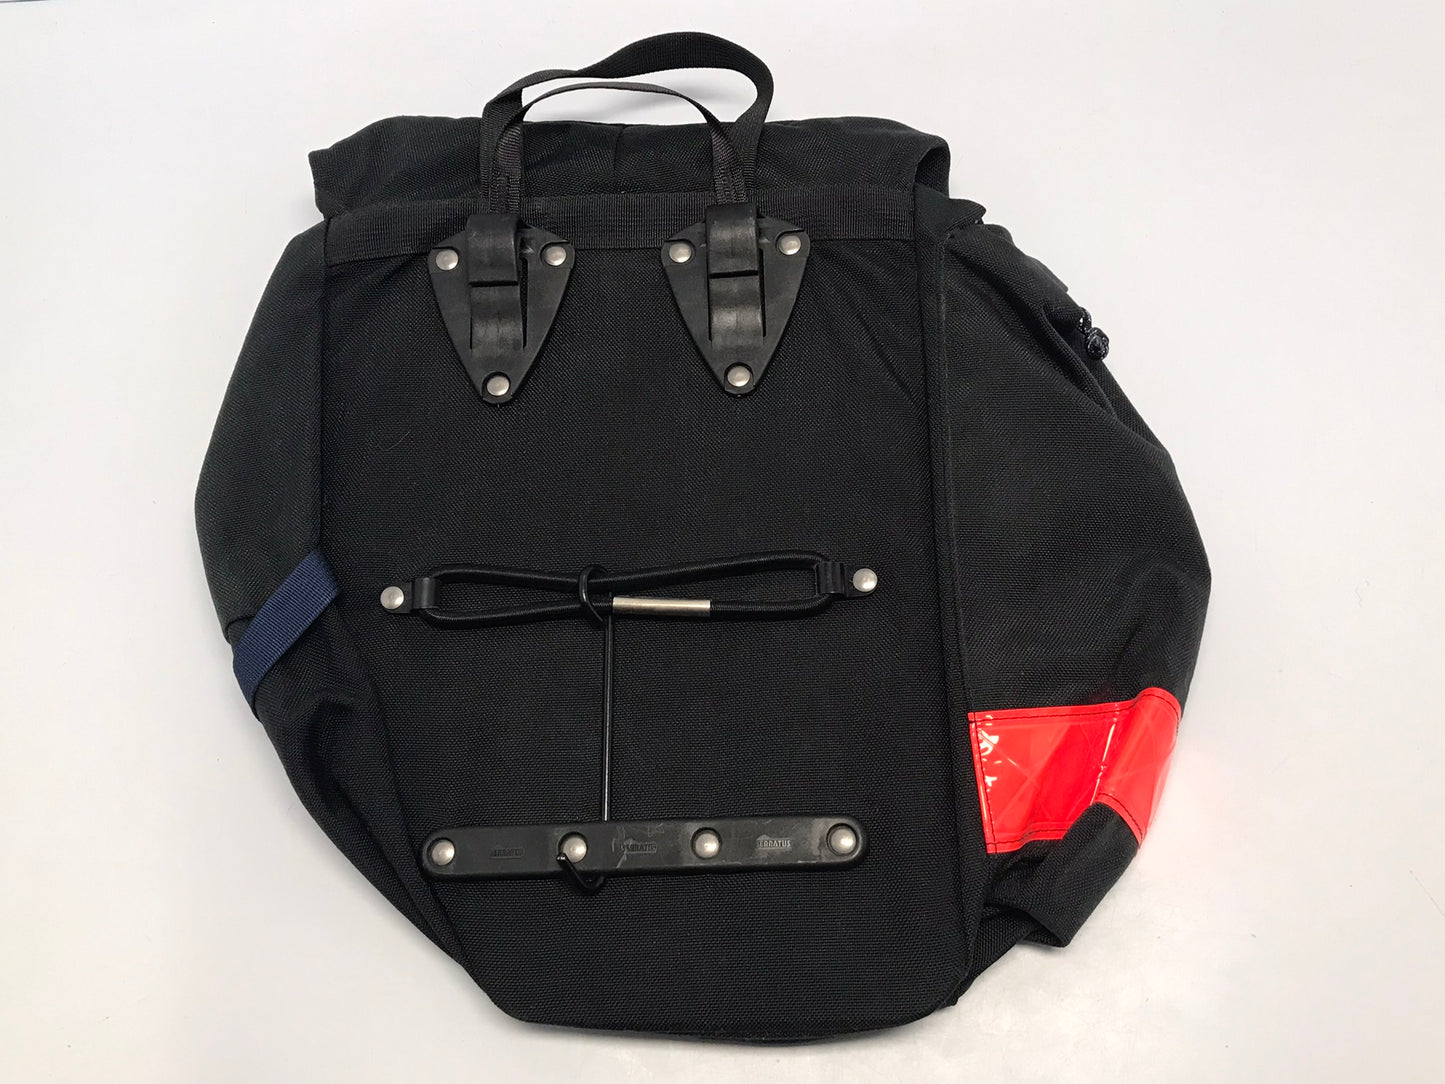 Pannier Serratus Bike Bag Carrier Black Complete